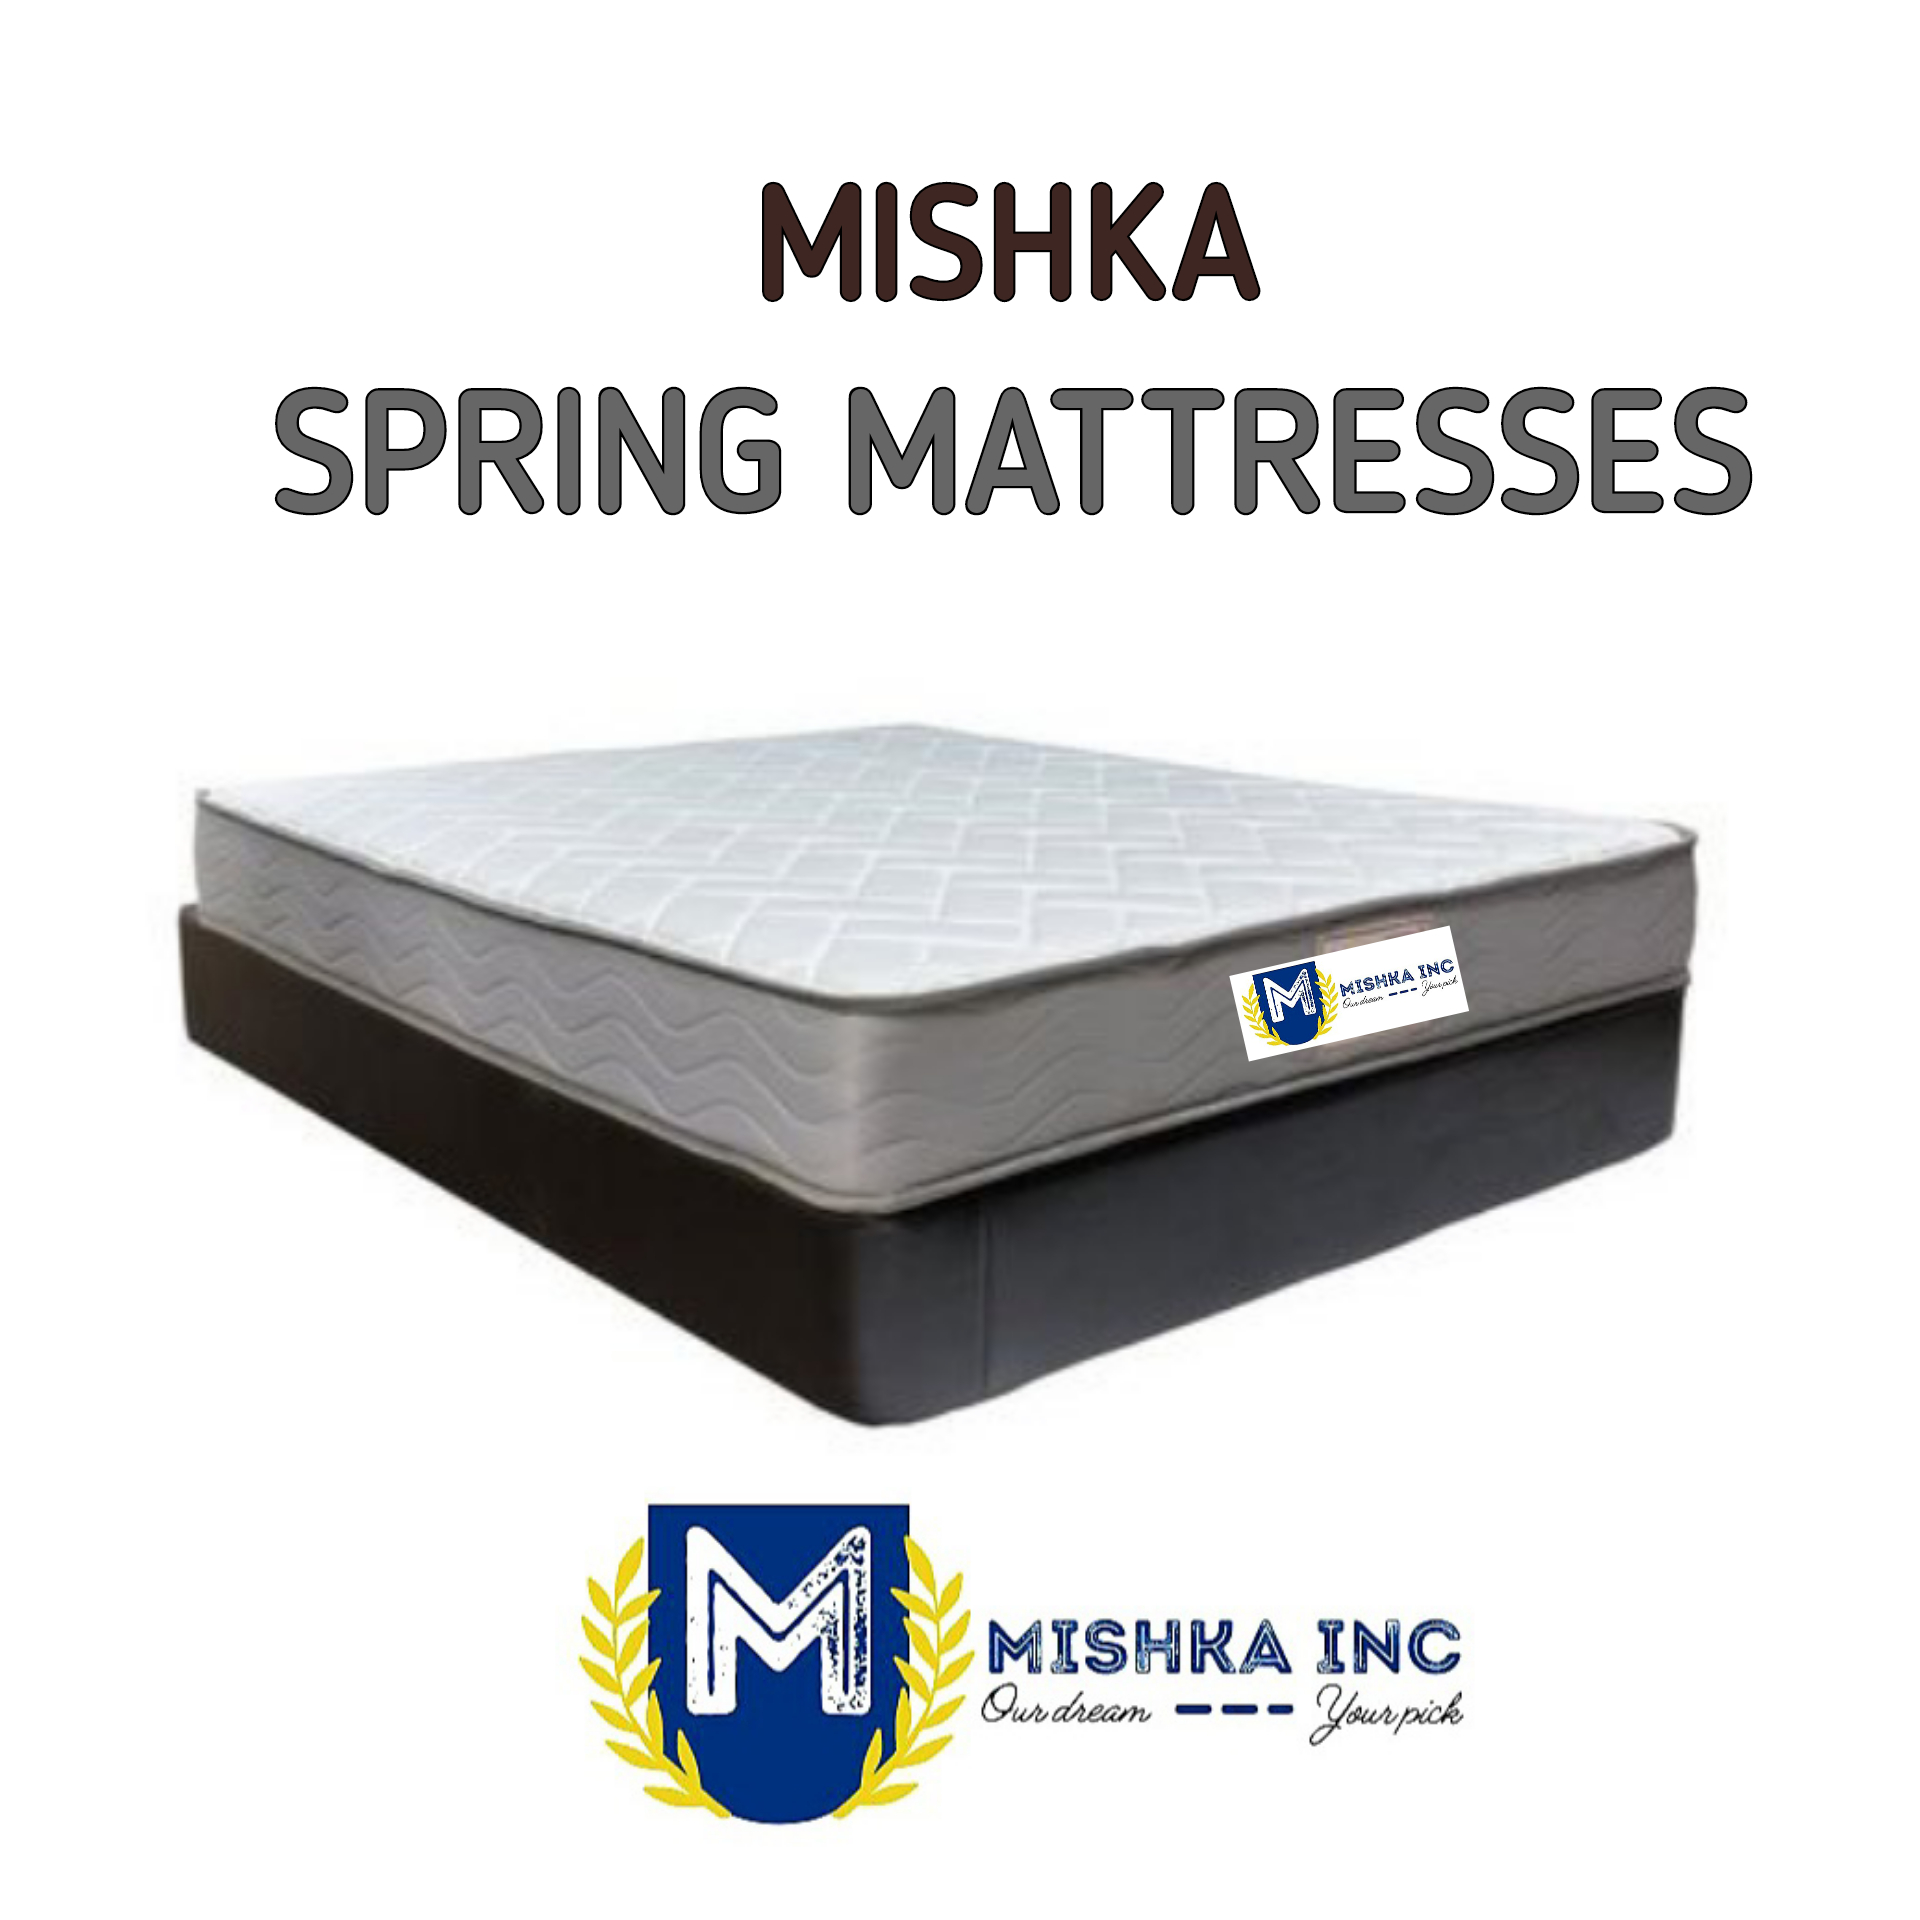 Mishka Spring Mattresses  from Mishka INC 